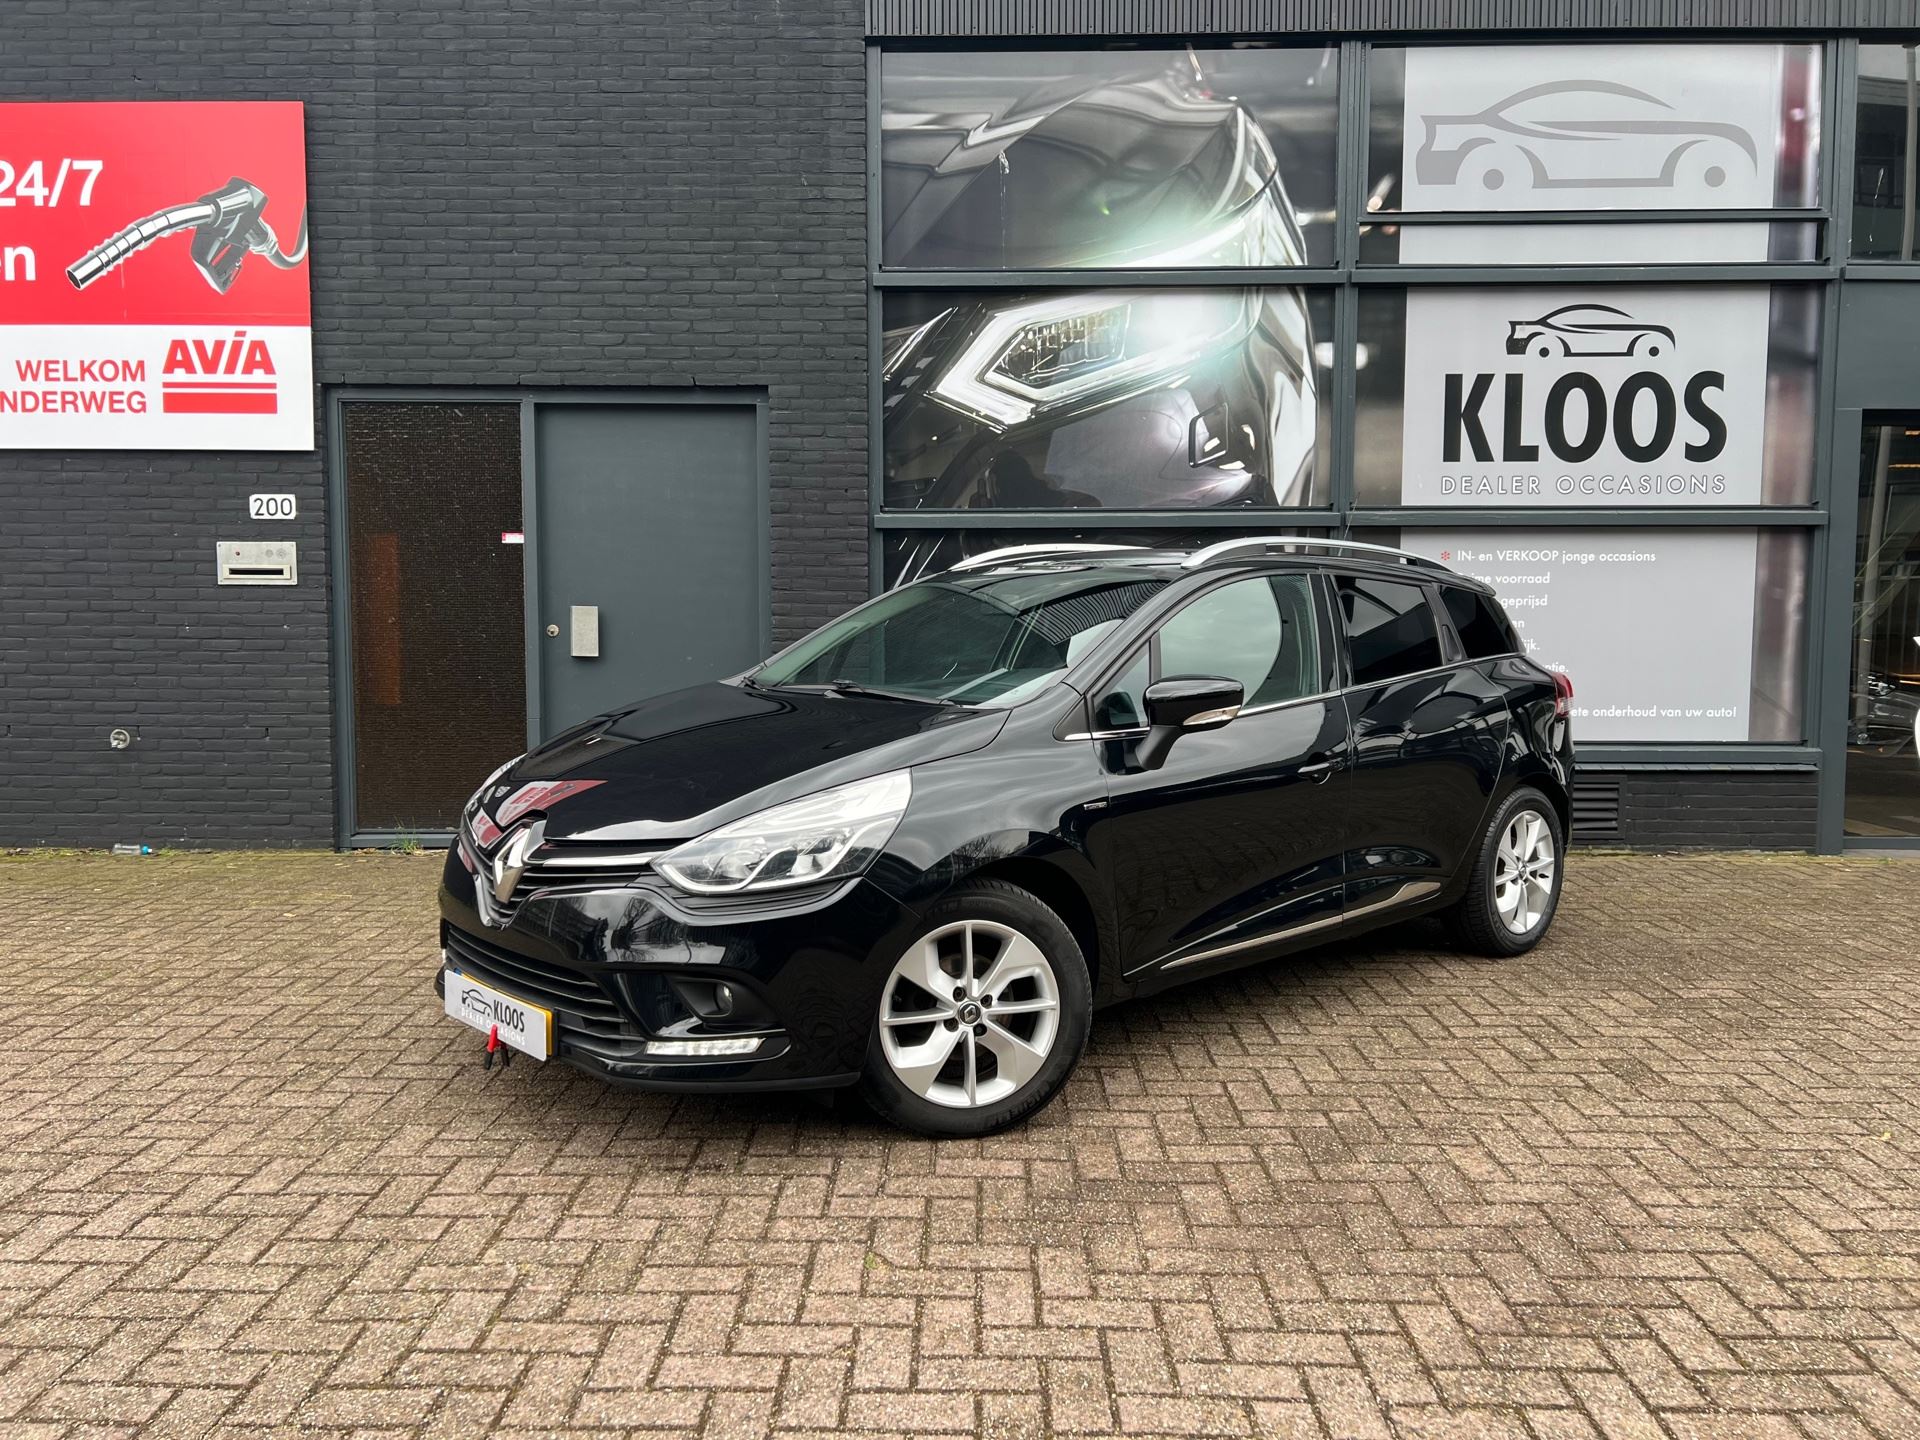 Renault Clio Estate - 0.9 TCe 6 12 maanden garantie Benzine uit 2017 - www.kloosdealeroccasions.nl